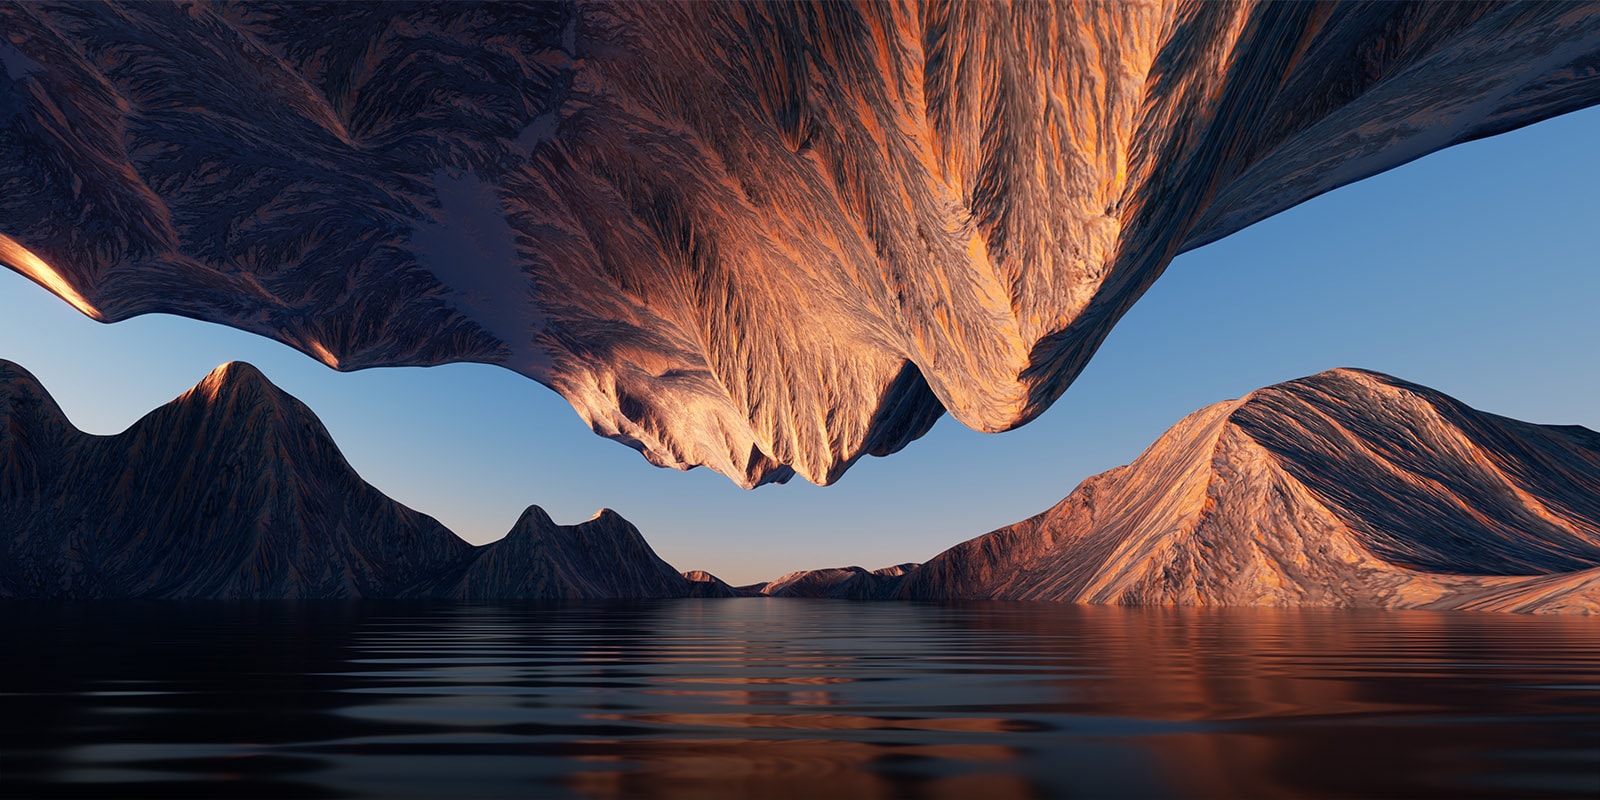 Slike narave s skalnato goro, obrnjeno ena proti drugi od zgoraj in spodaj, kažejo kontrast in podrobnosti.